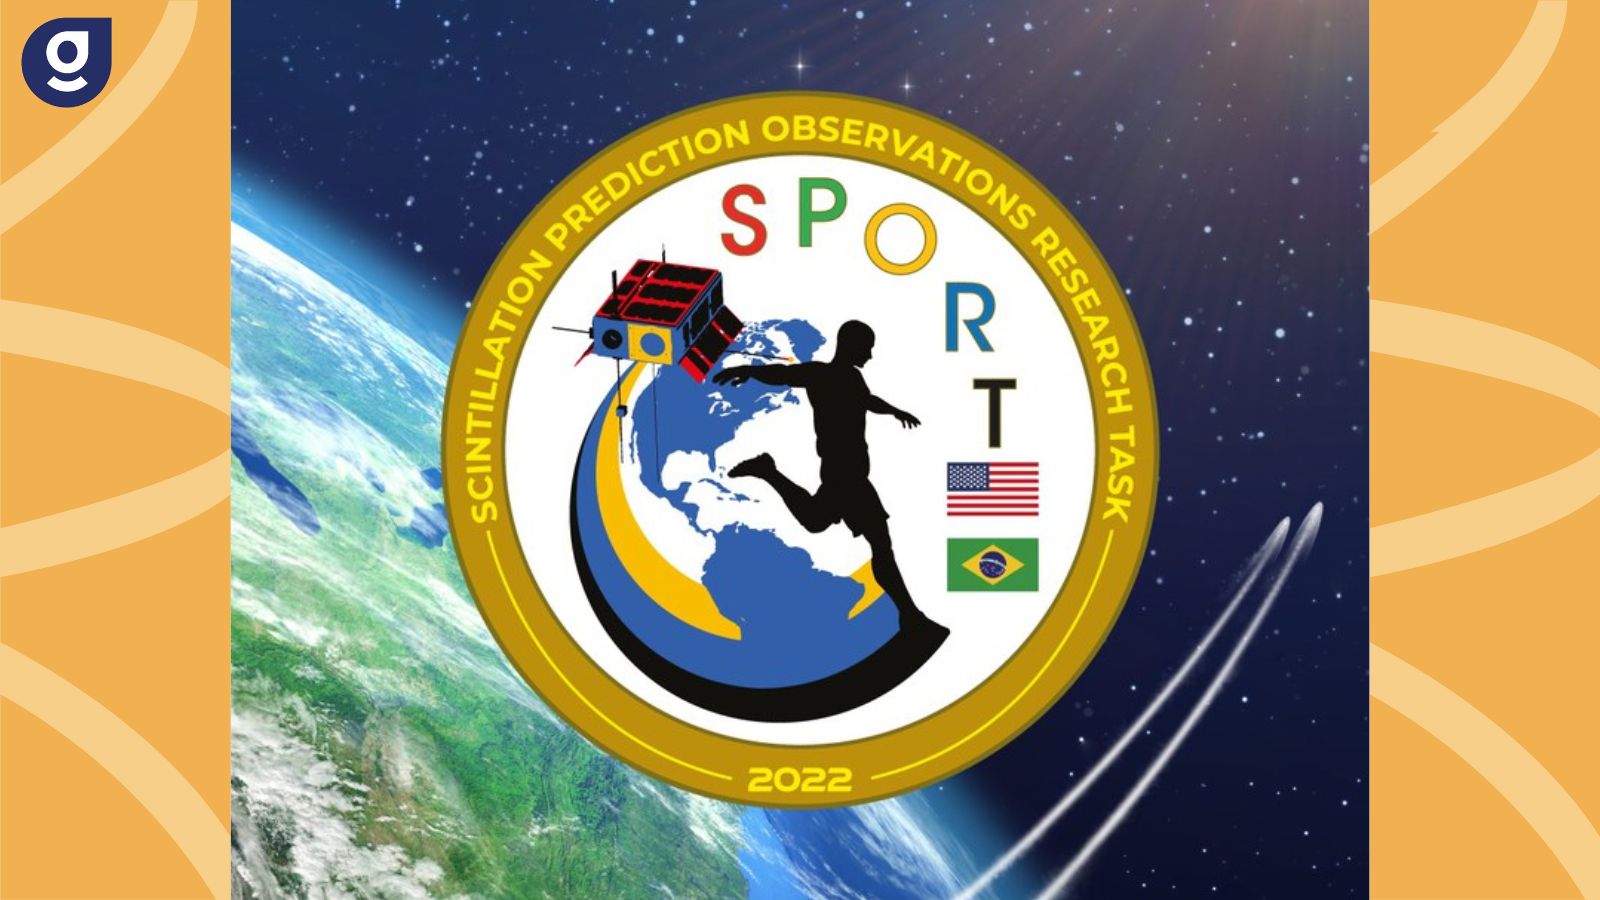 Parceria entre AEB e NASA, SPORT será lançado nesta terça registro de imóveis